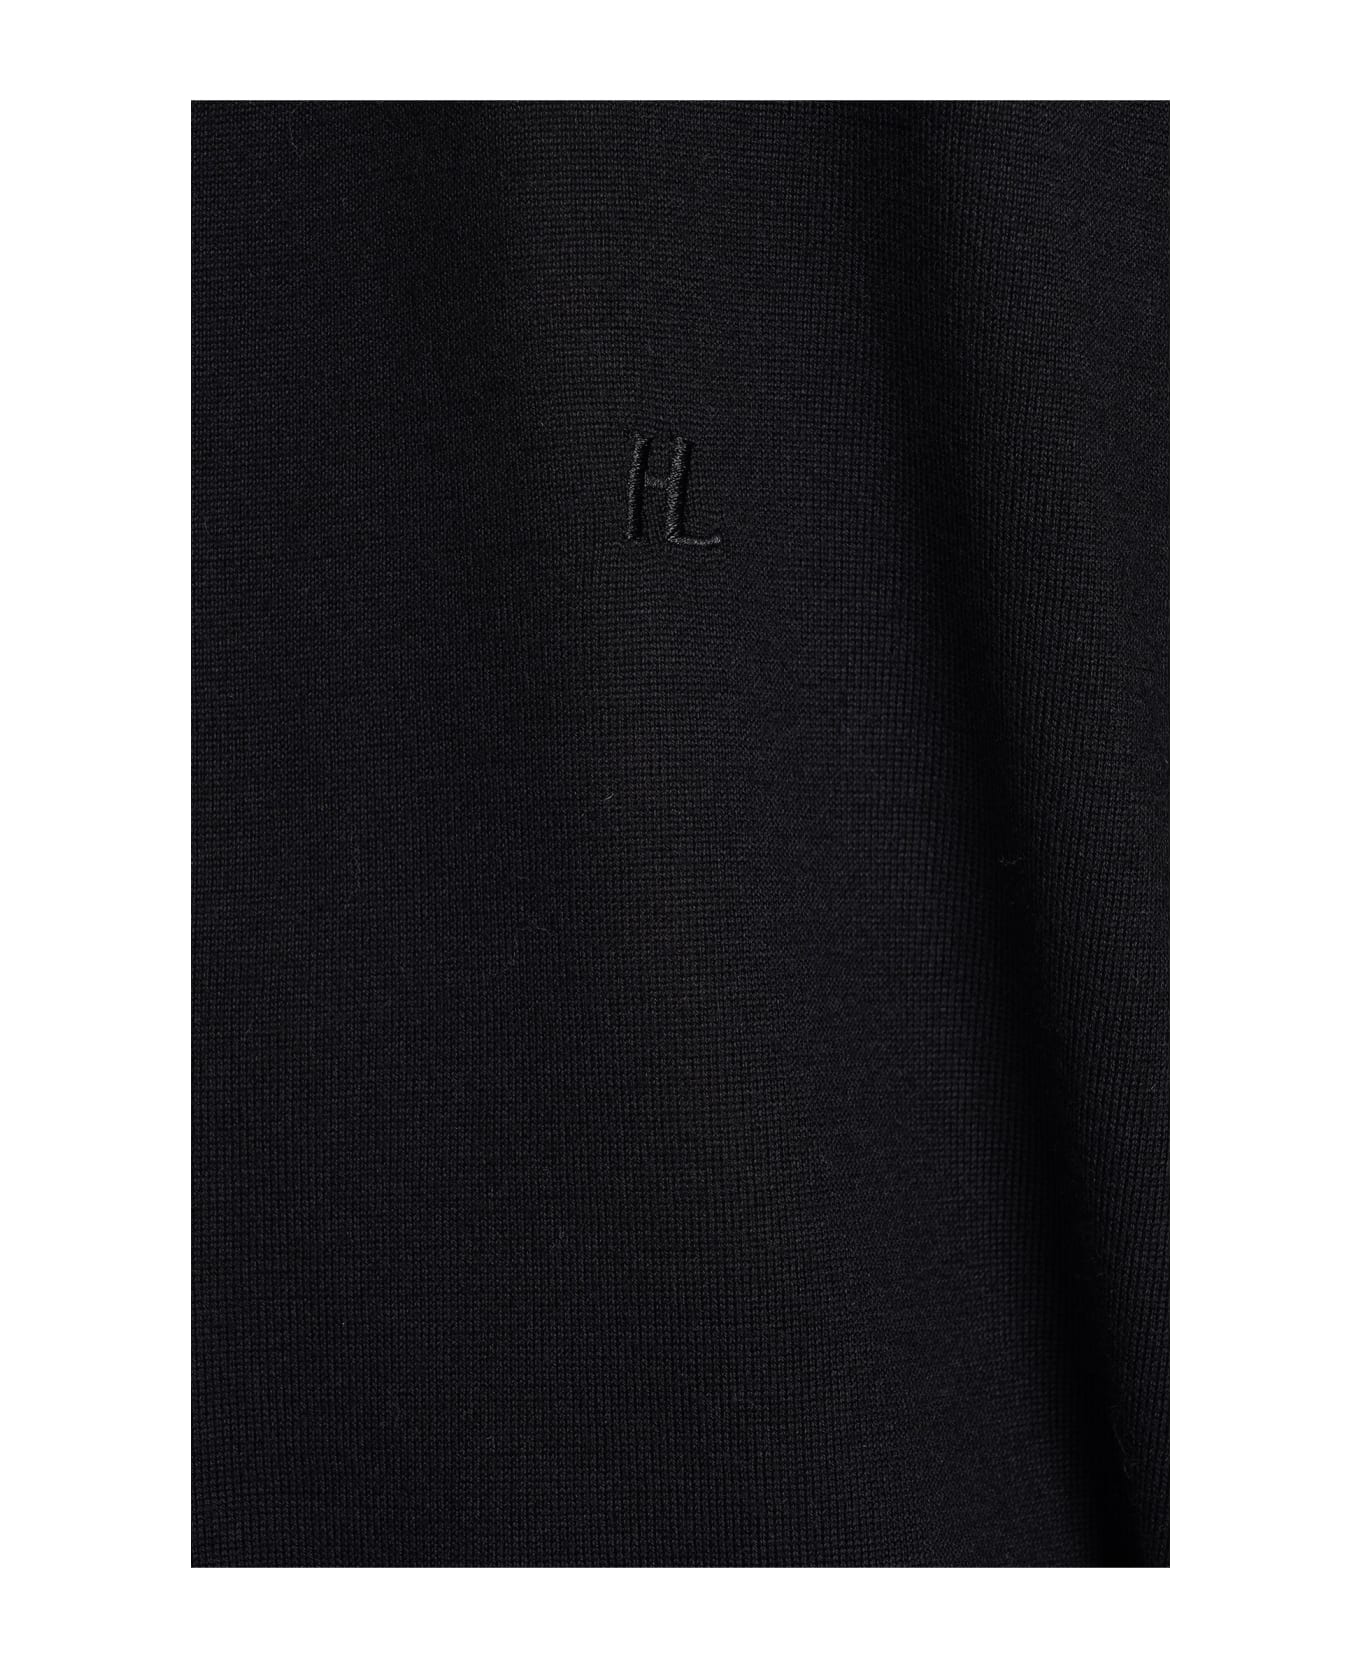 Helmut Lang Knitwear In Black Wool - black